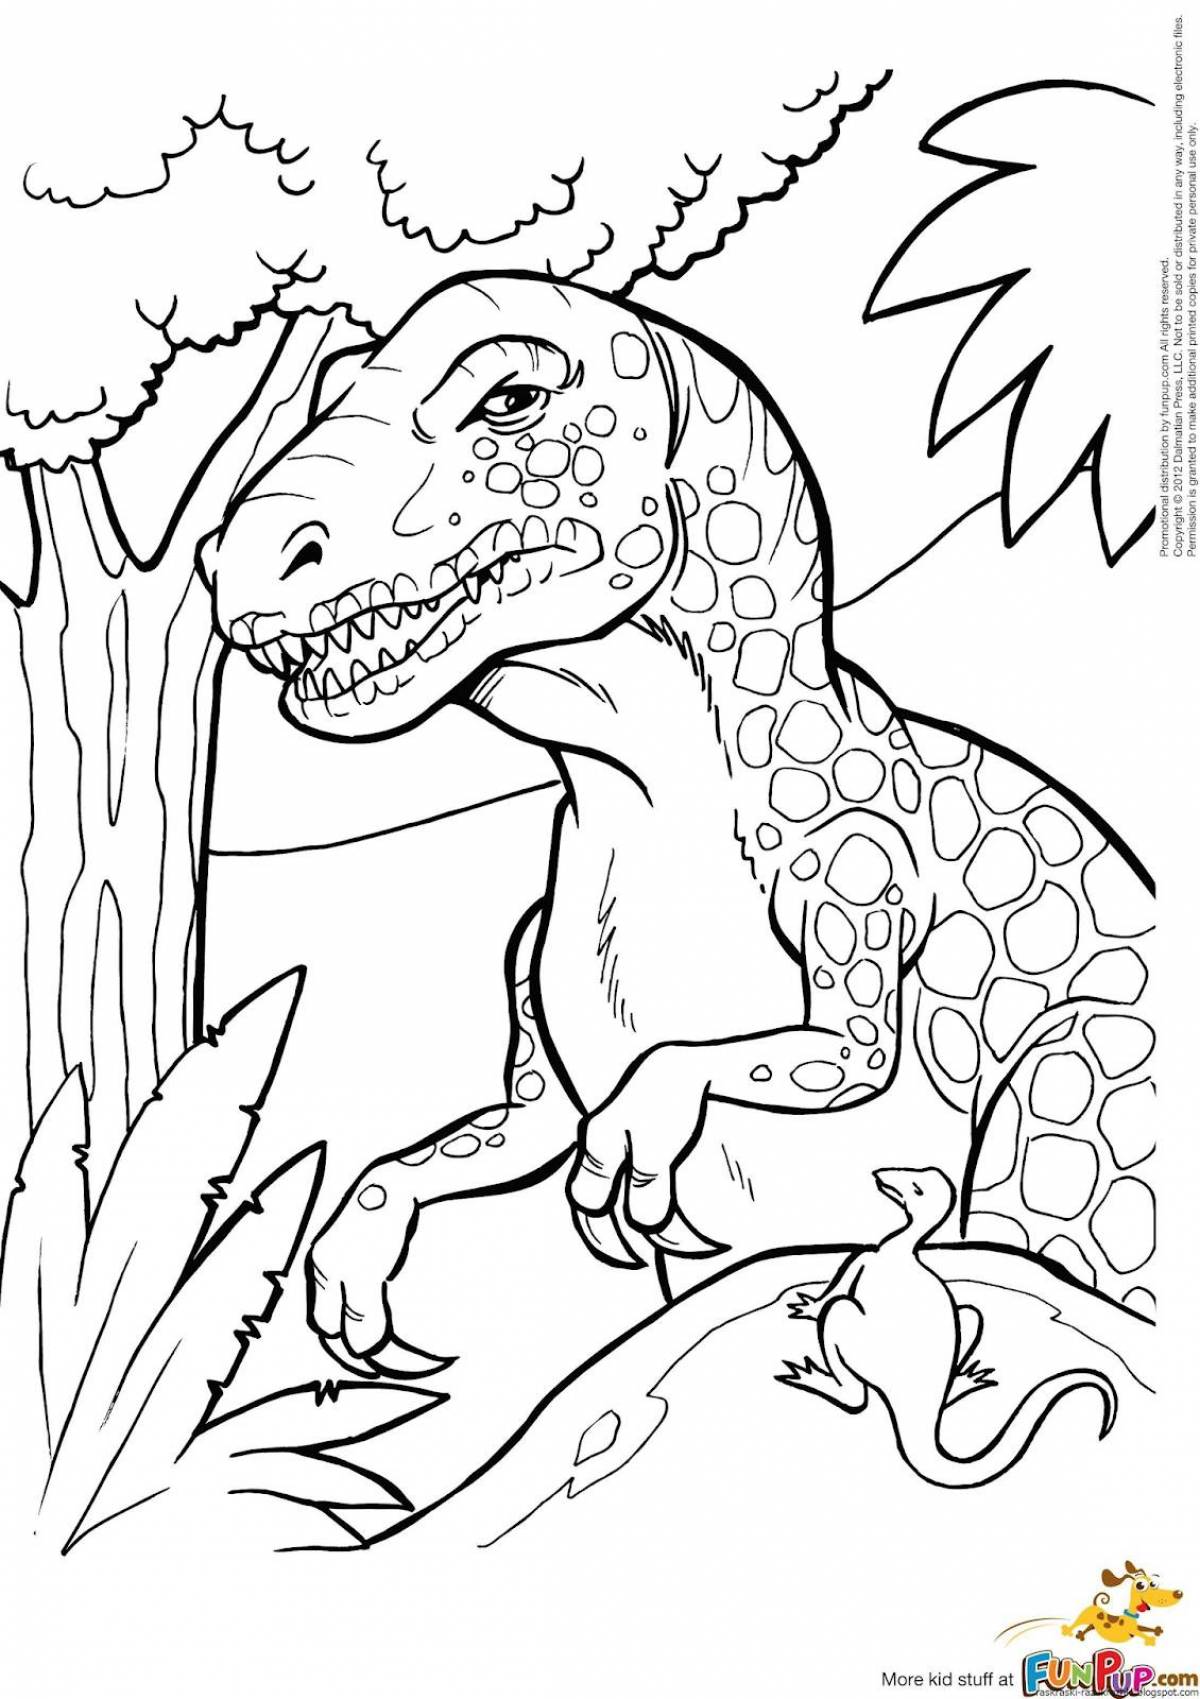 Увлекательная раскраска динозавров для мальчиков